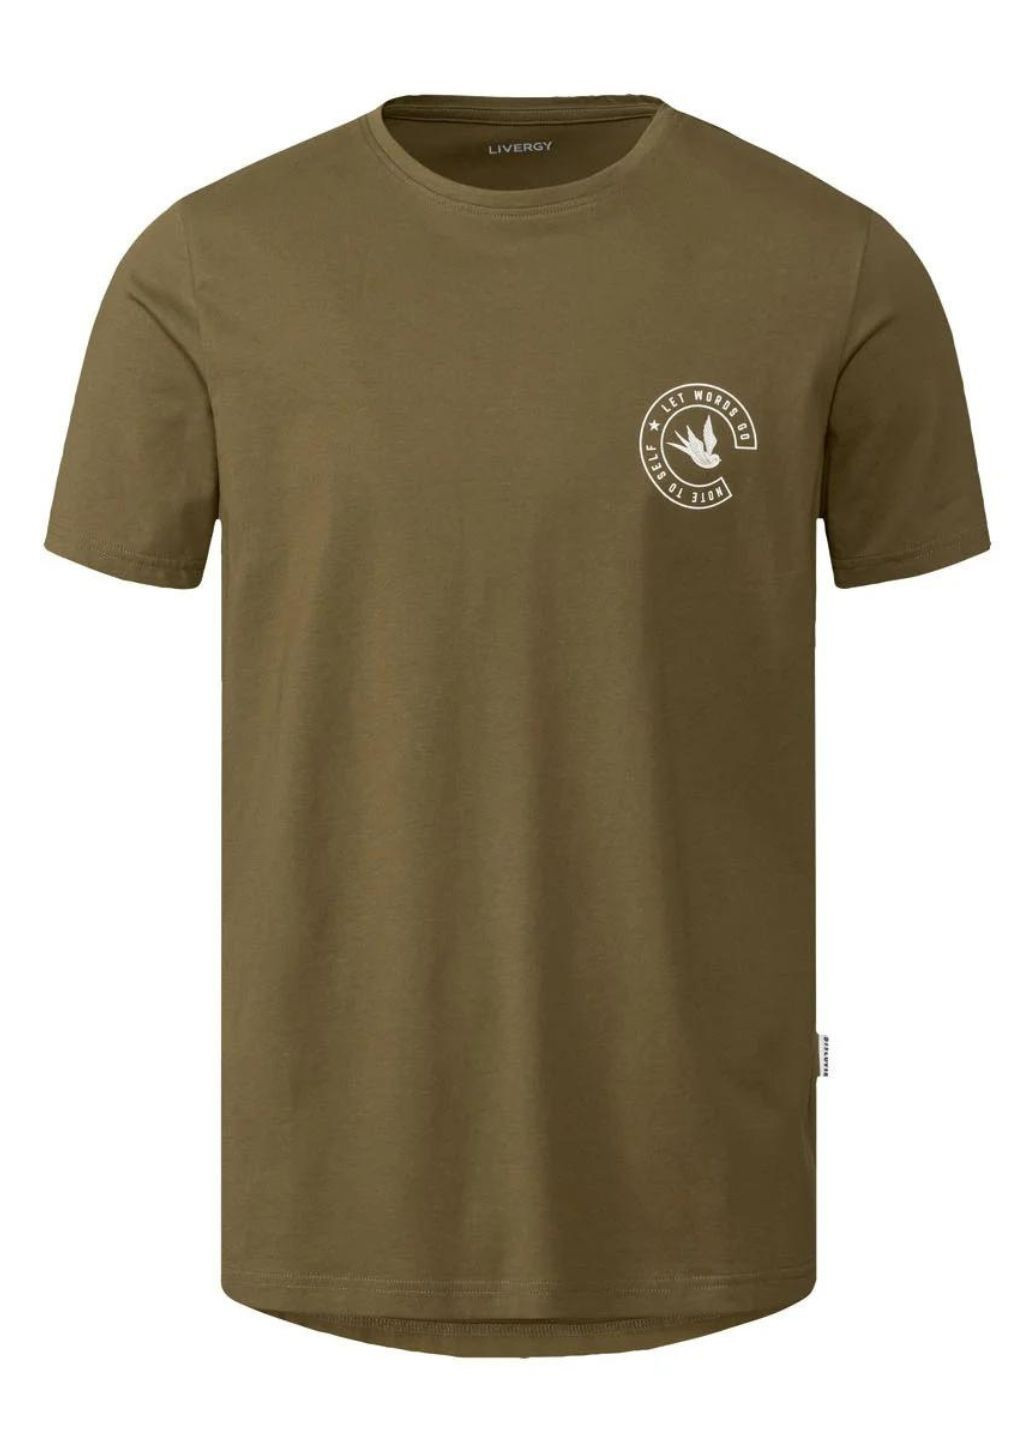 Хакі (оливкова) футболка чоловіча. бавовна з коротким рукавом Livergy